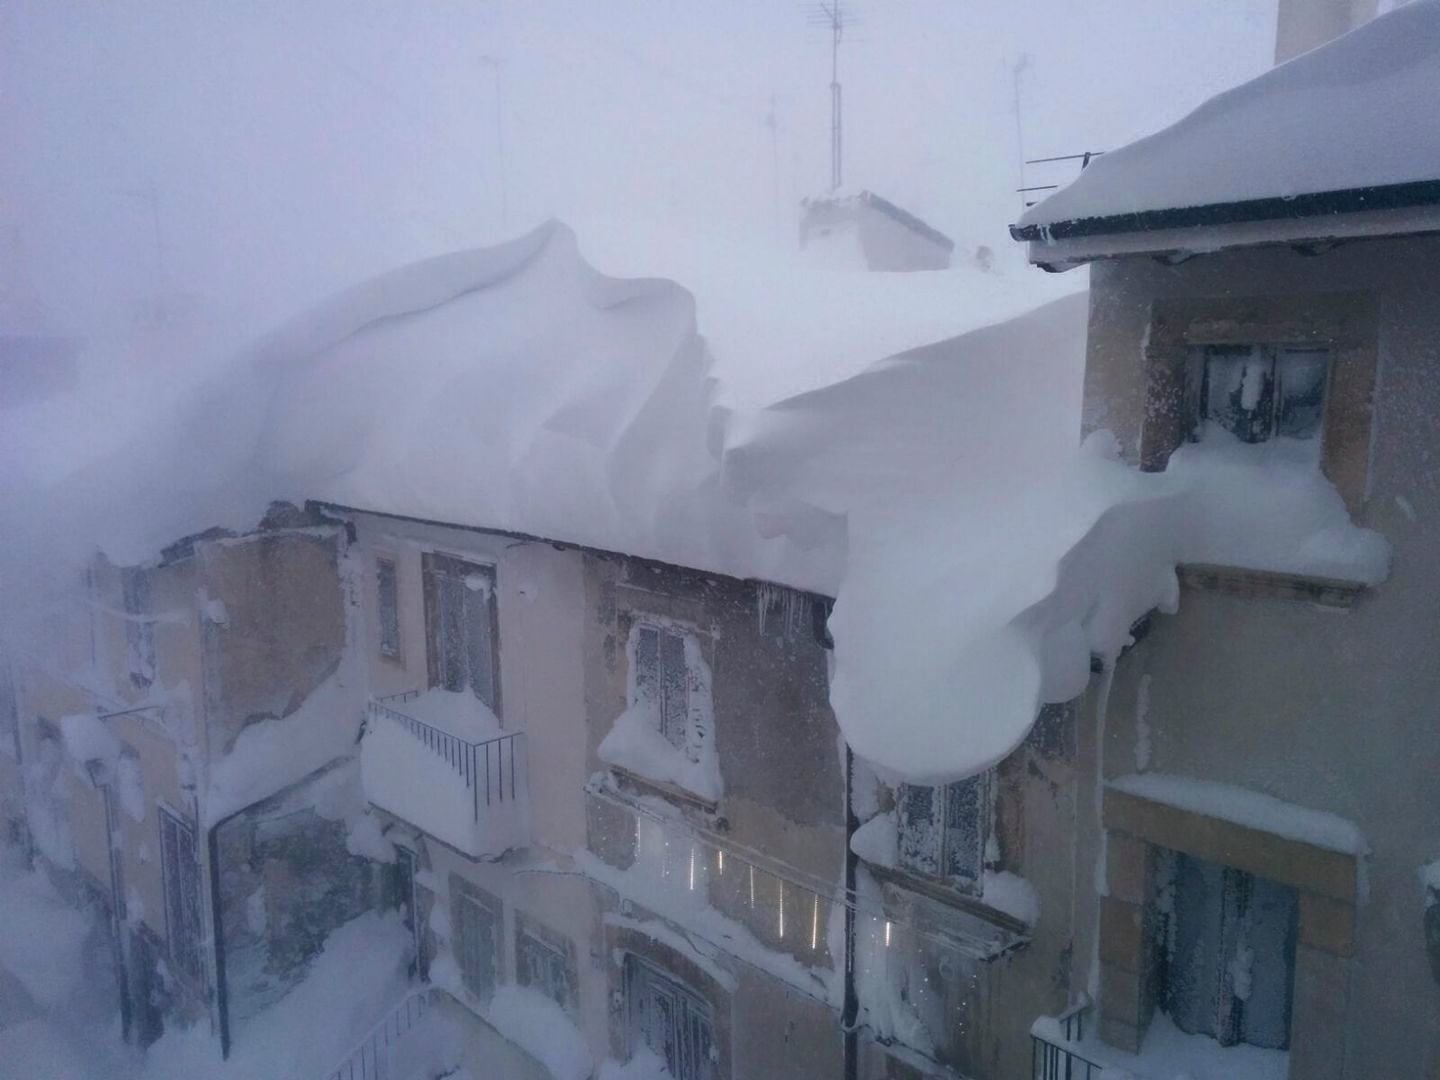 Heavy snowfall in Italy